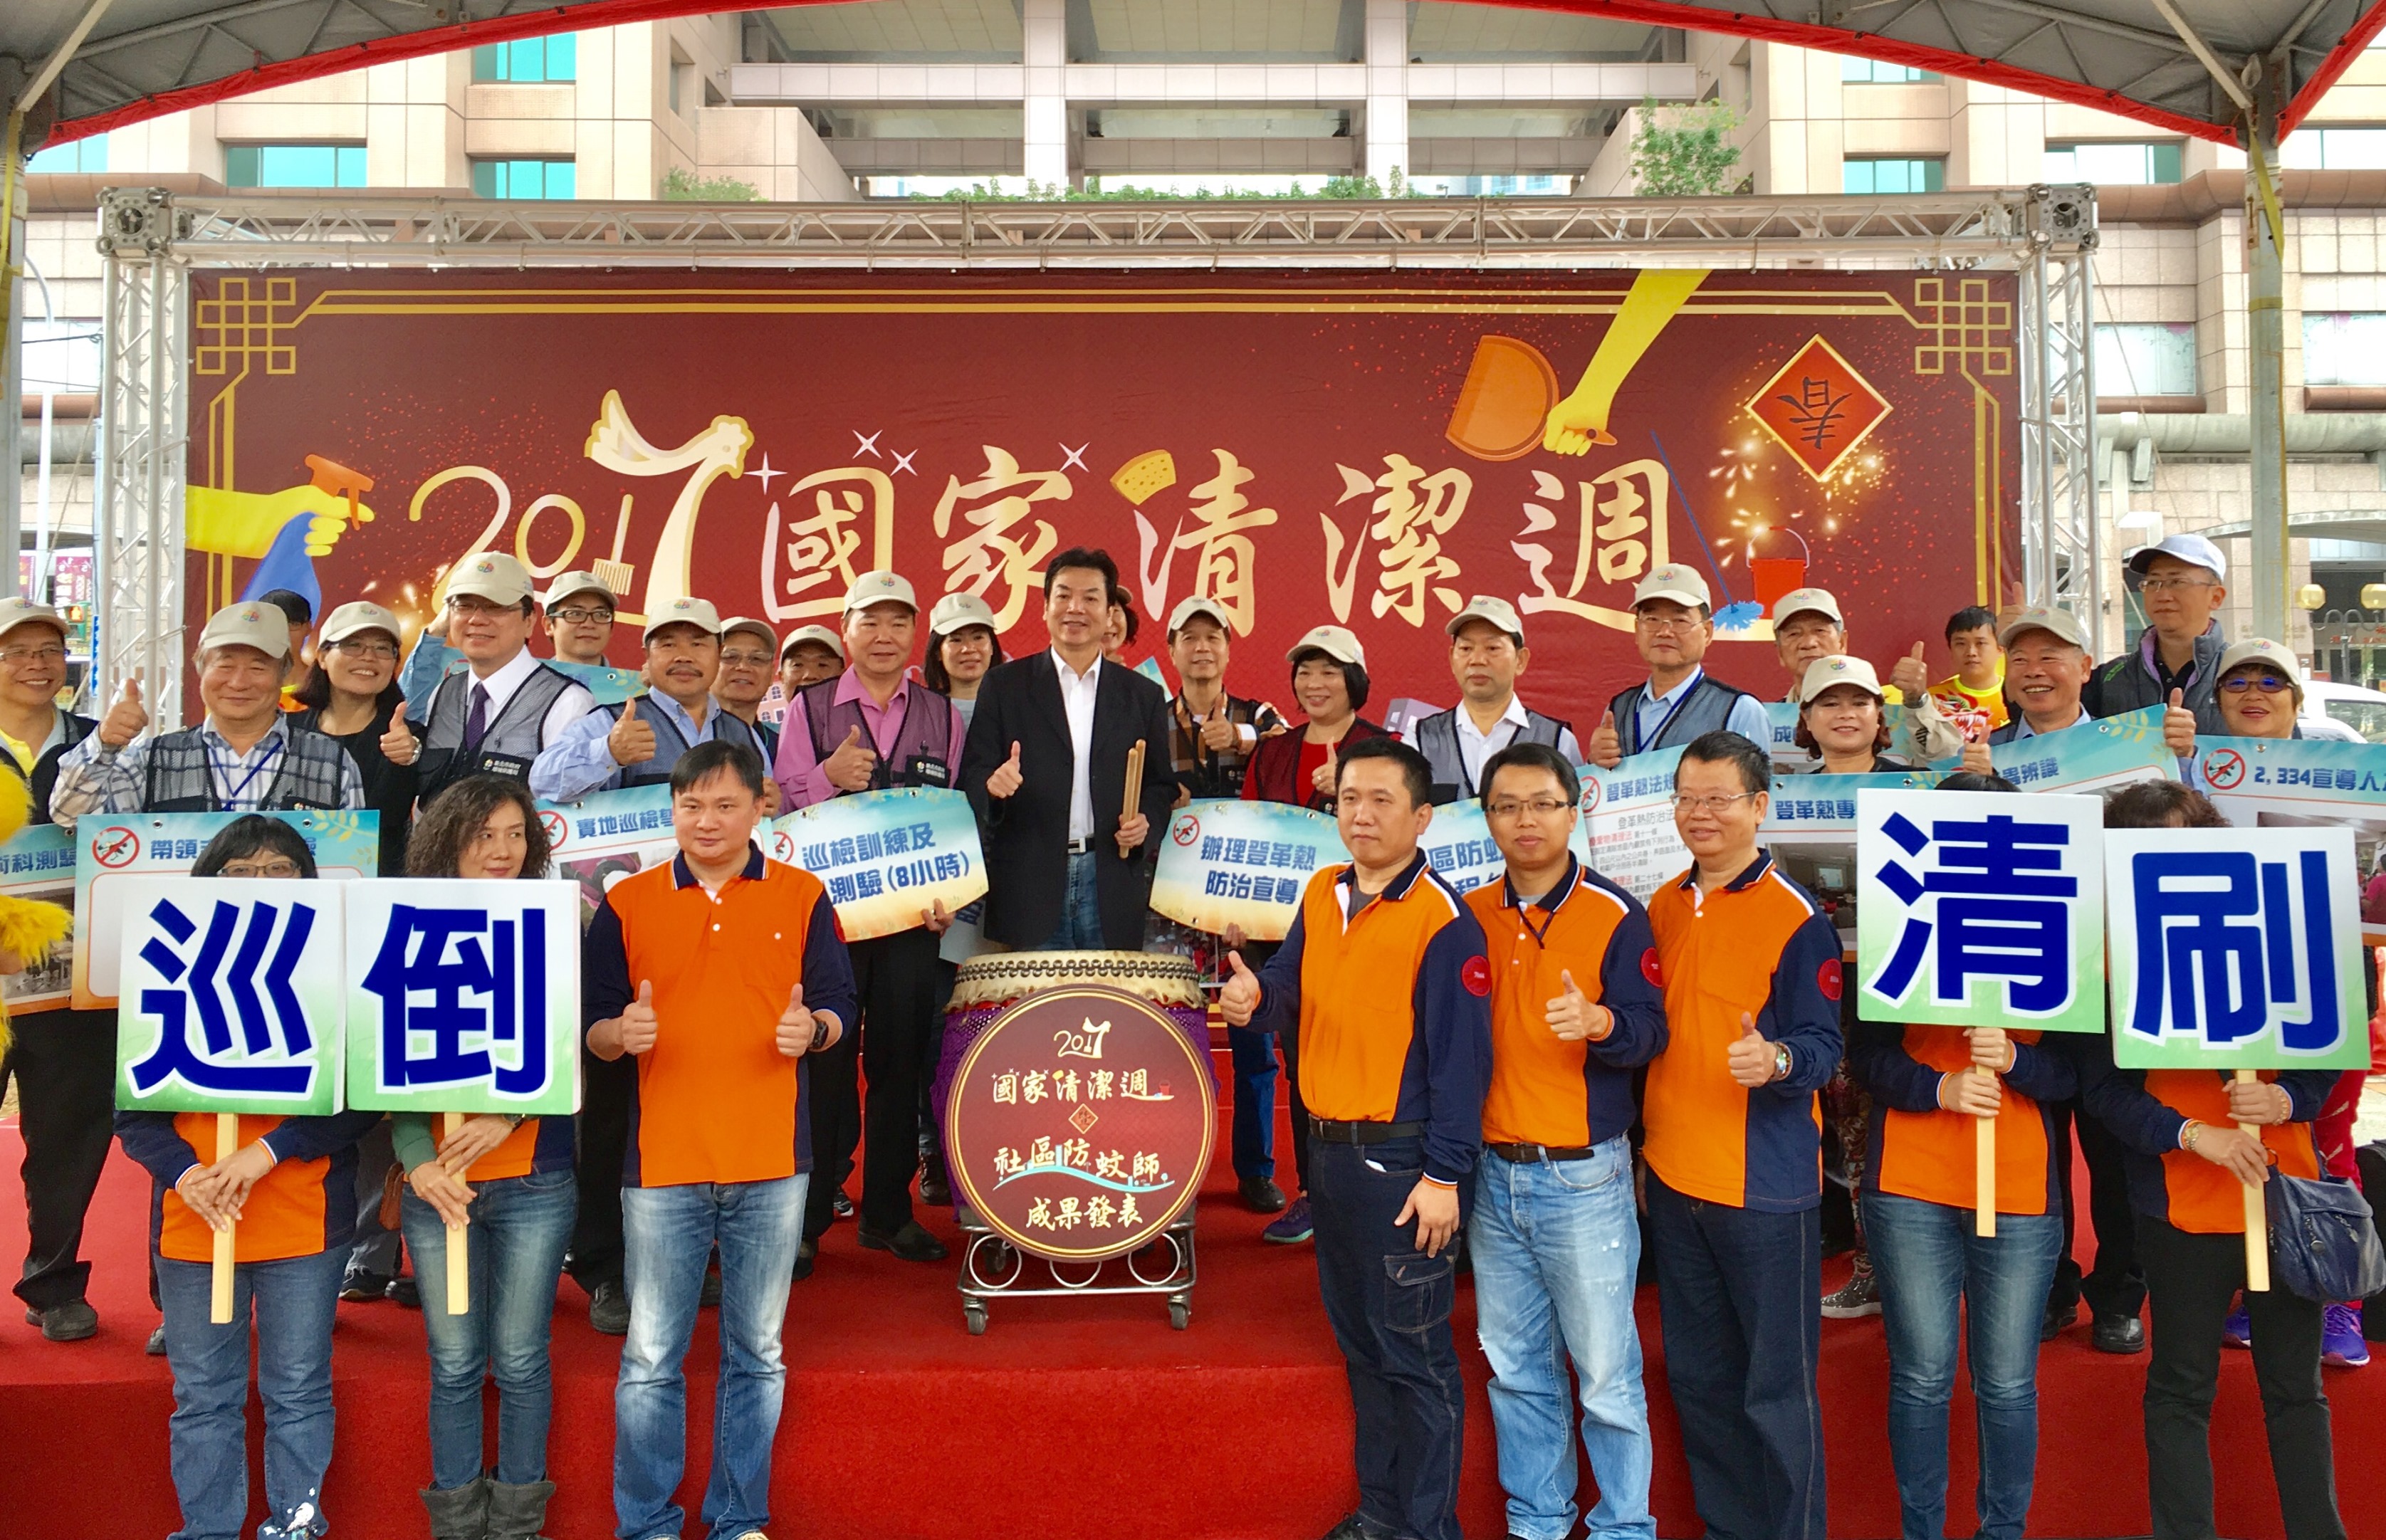 2017國家清潔週正式啟動，環保局長劉和然、社區防蚊師、里長、志義工及清潔隊員們共同揭幕